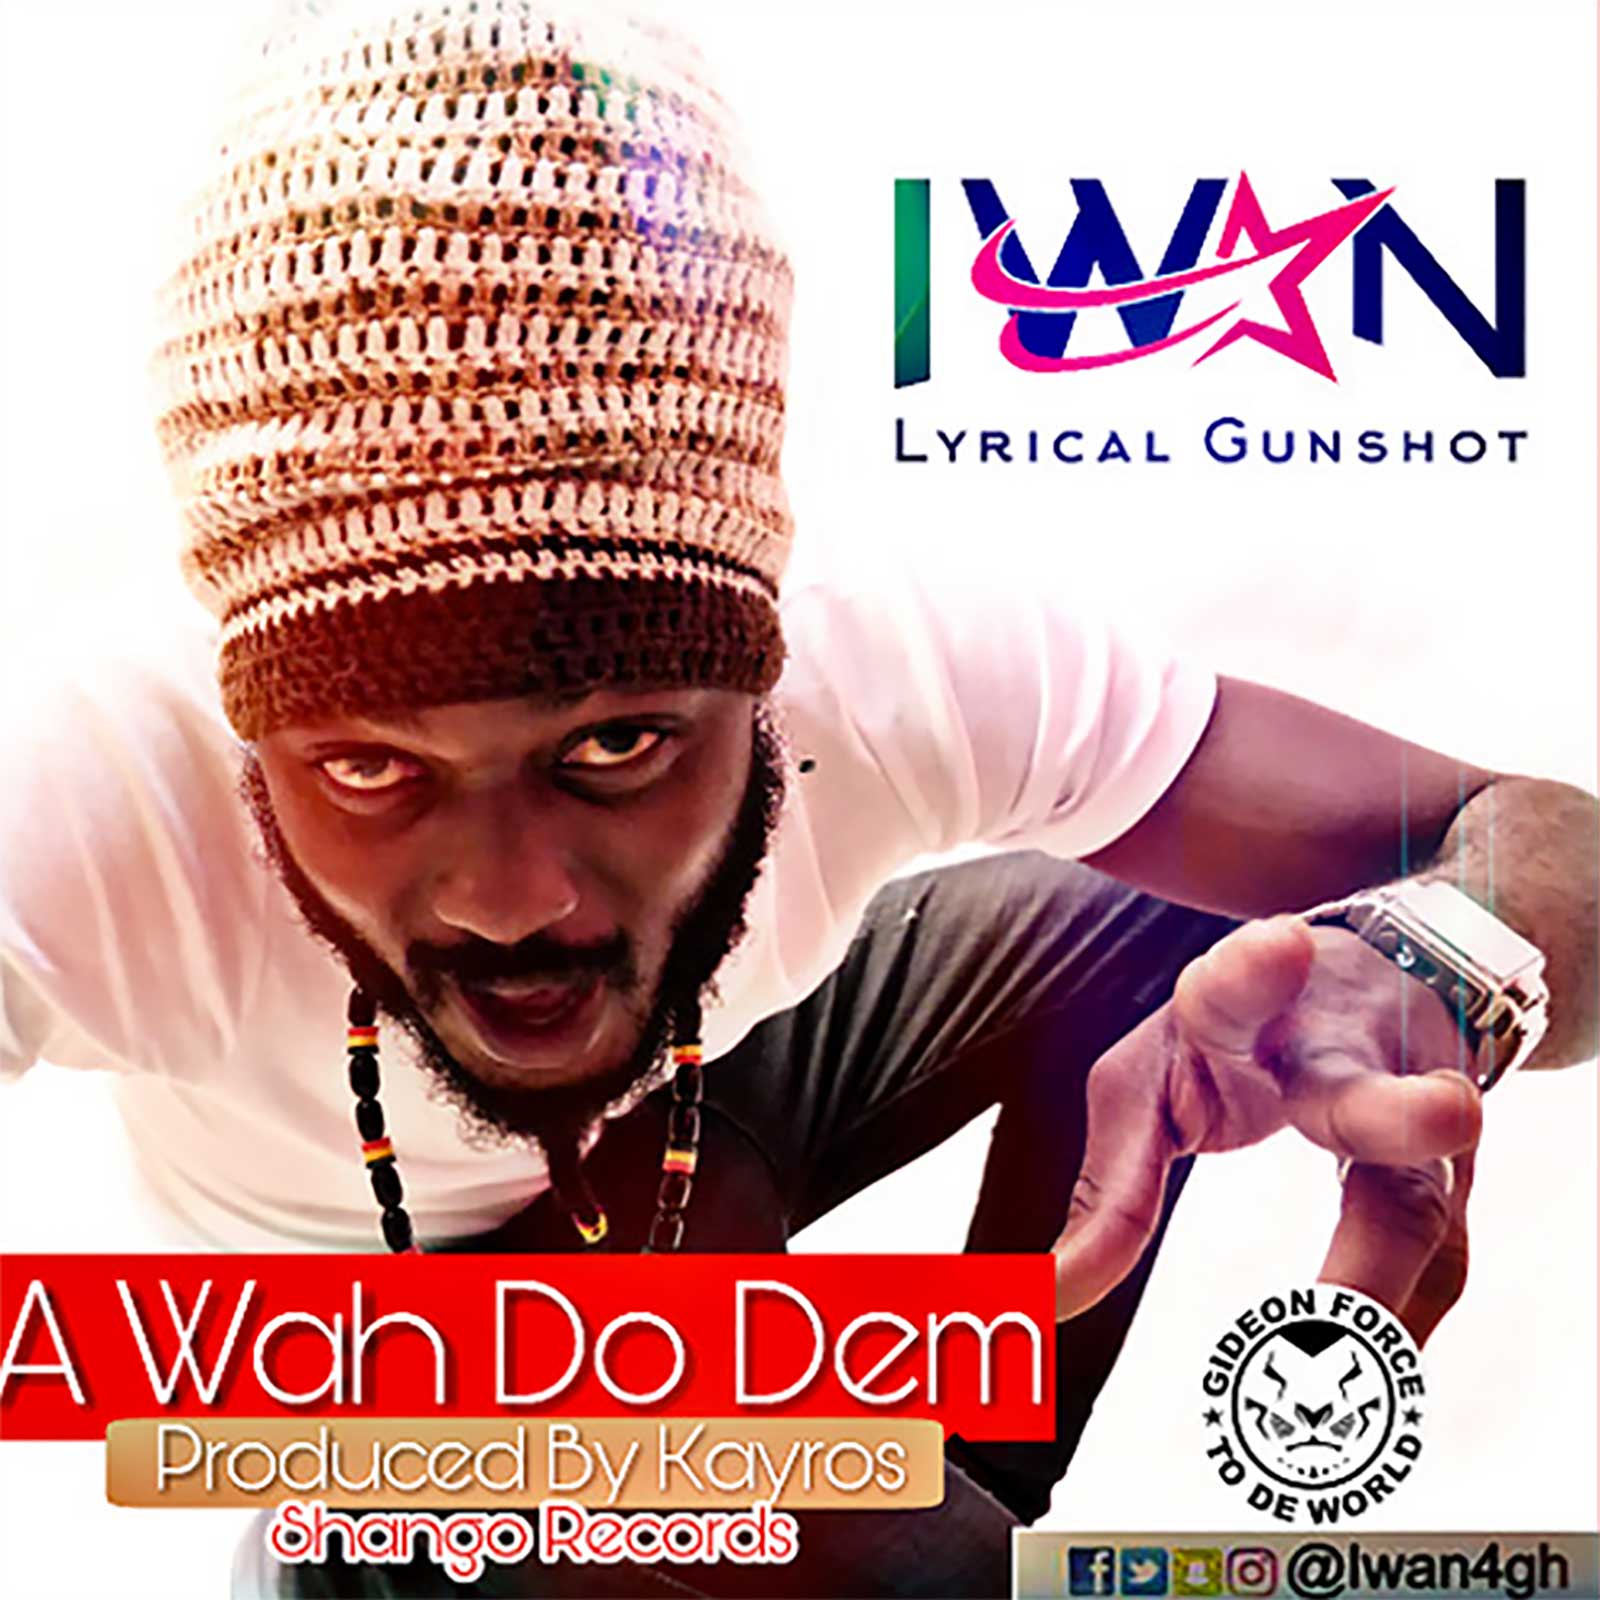 A Wah Do Dem by IWAN